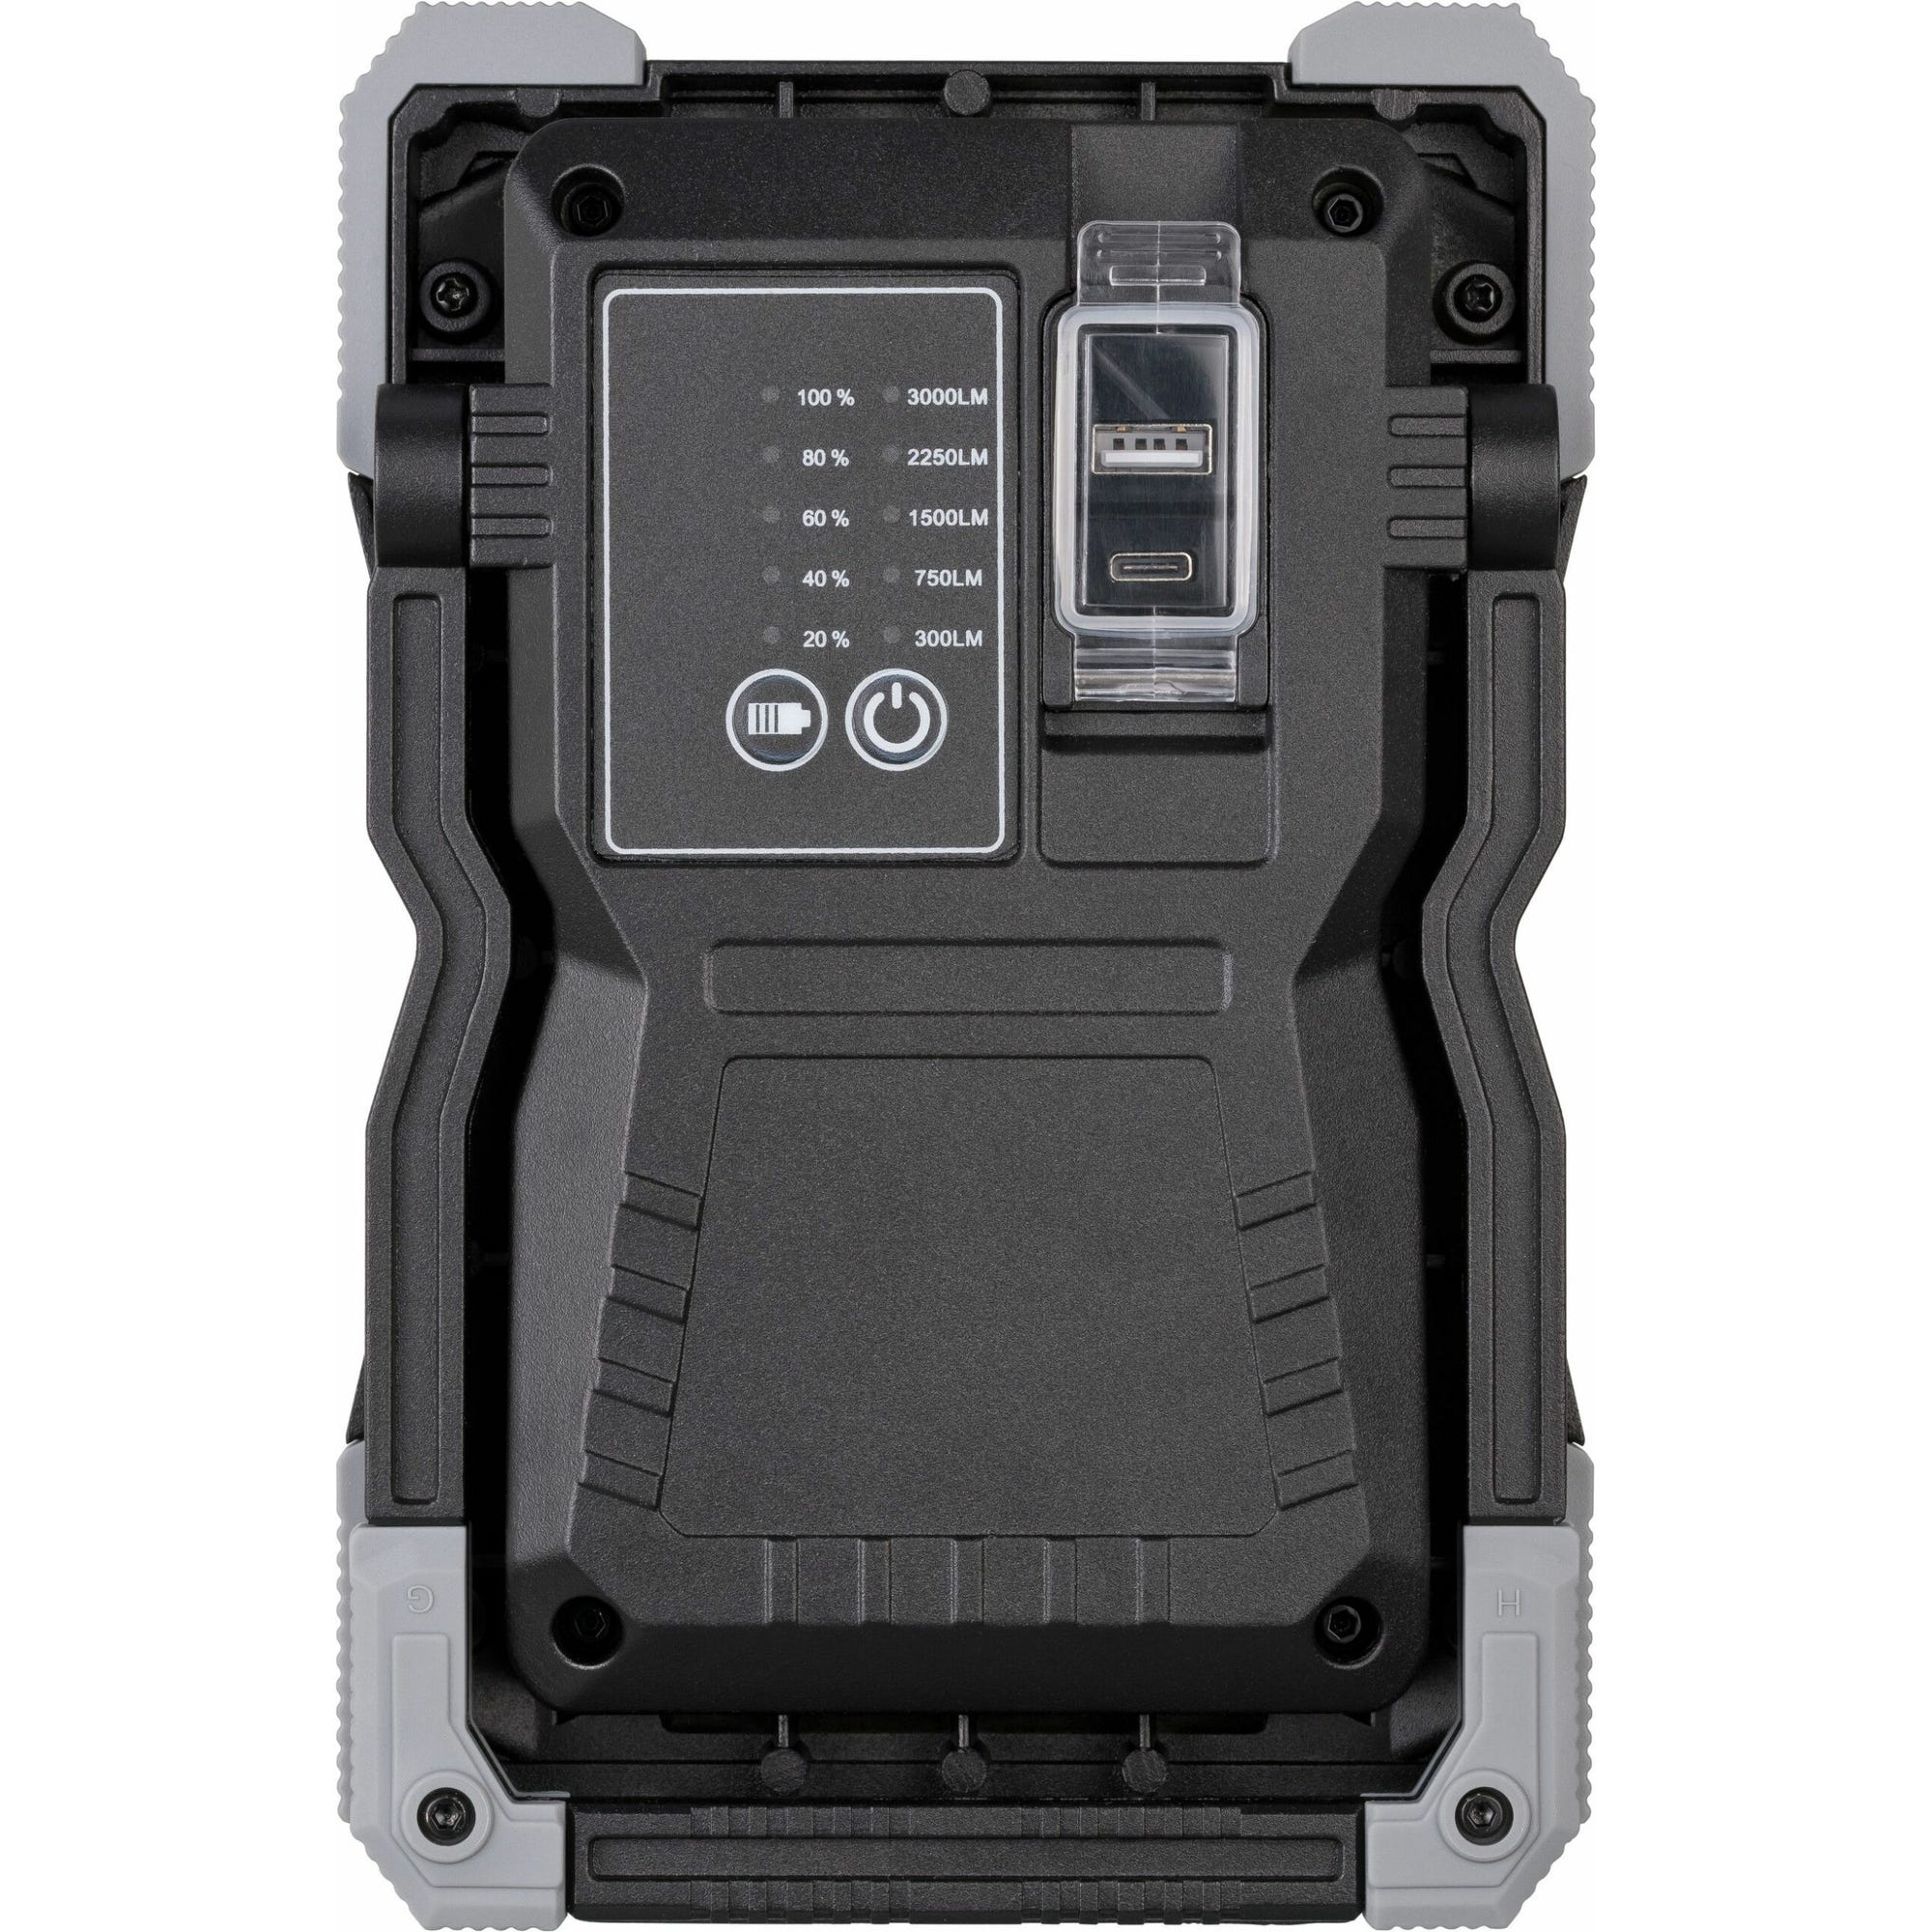 Projecteur portable led rufus rechargeable brennenstuhl 1500ma ip65 avec usb - 1173100100 5